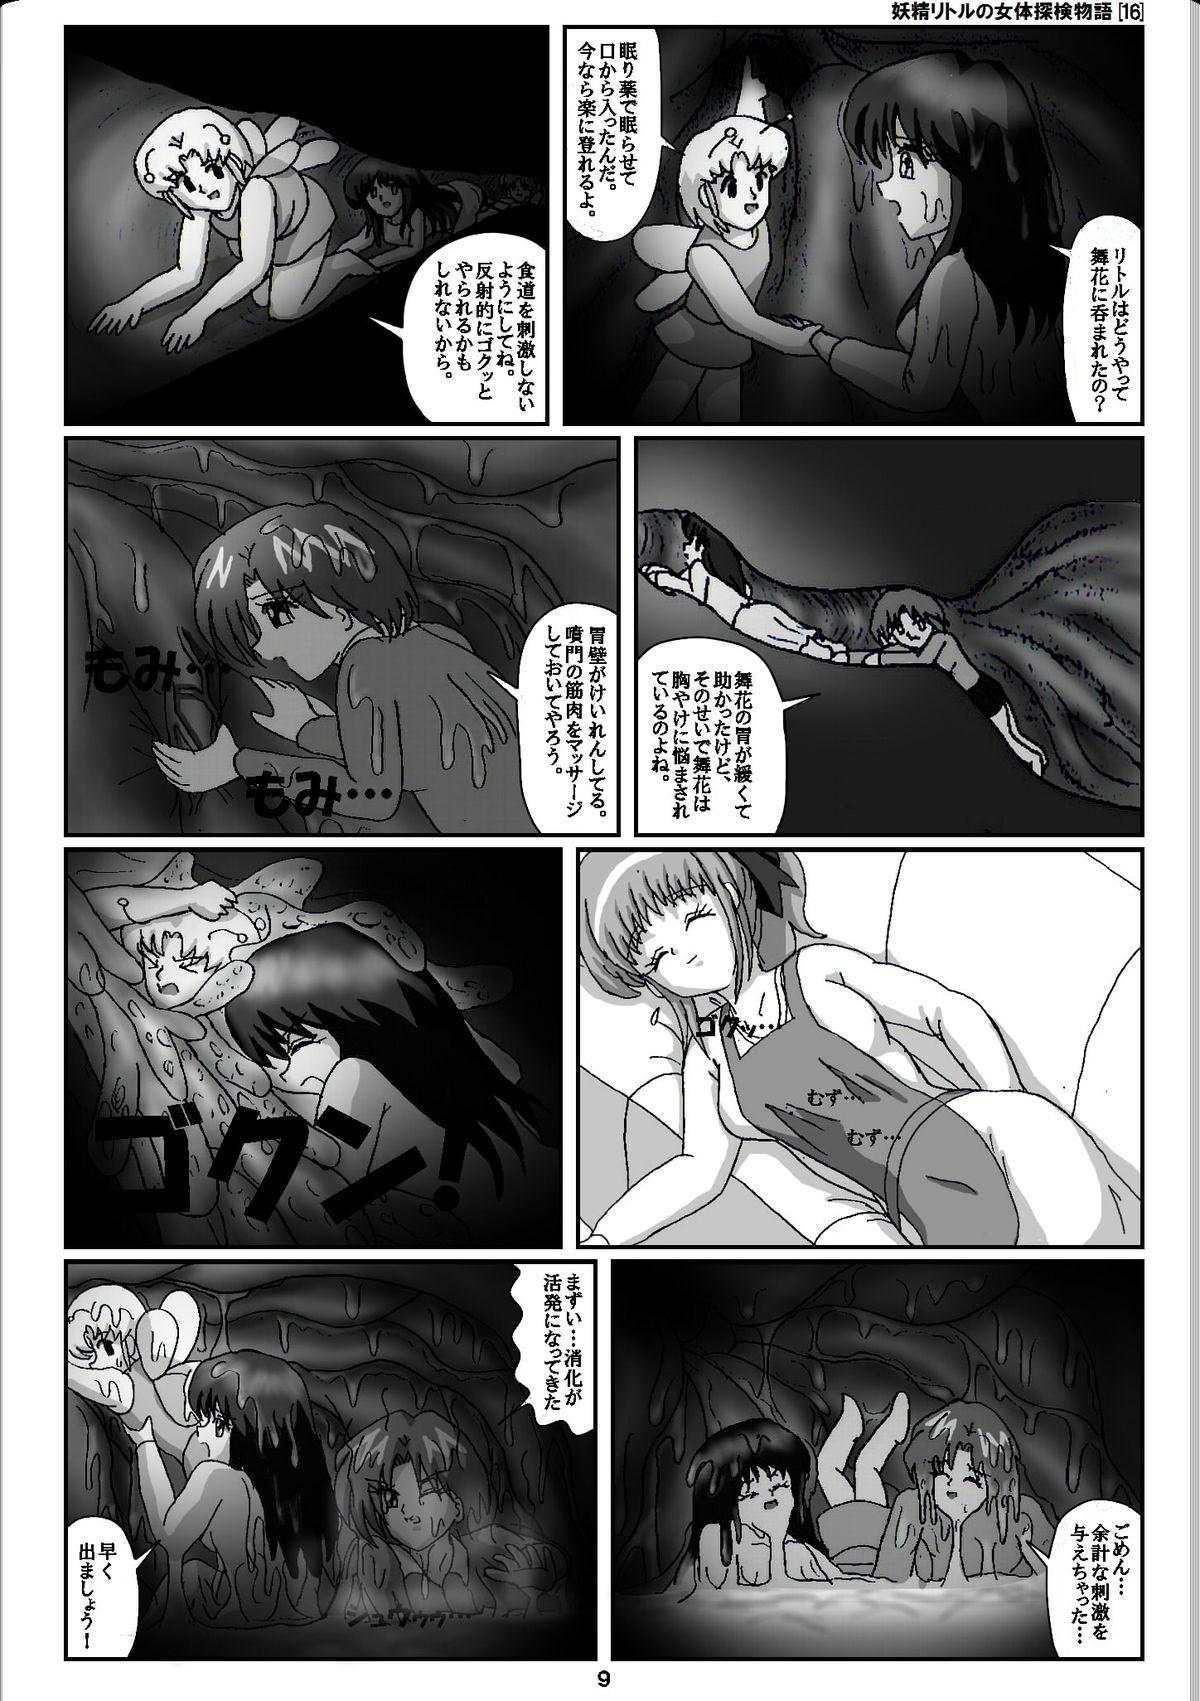 Vagina Yousei Little no Nyotai Tanken Monogatari Gets - Page 9